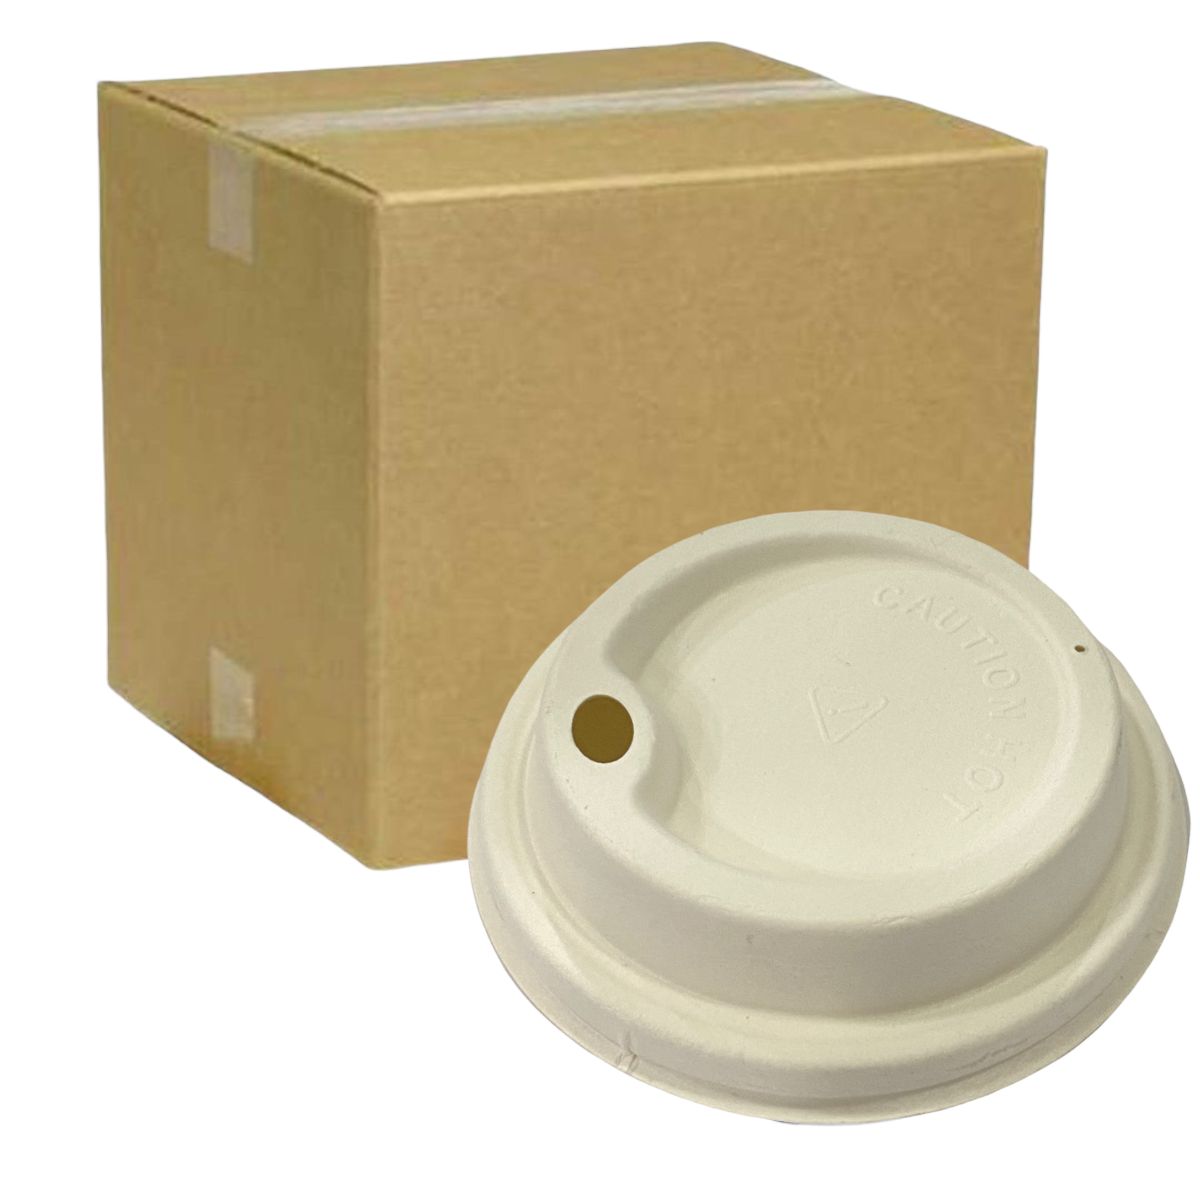 Grafic packaging SMR-8 vaso para bebida caliente 8 oz, caja con 1000 piezas  en 20 paquetes